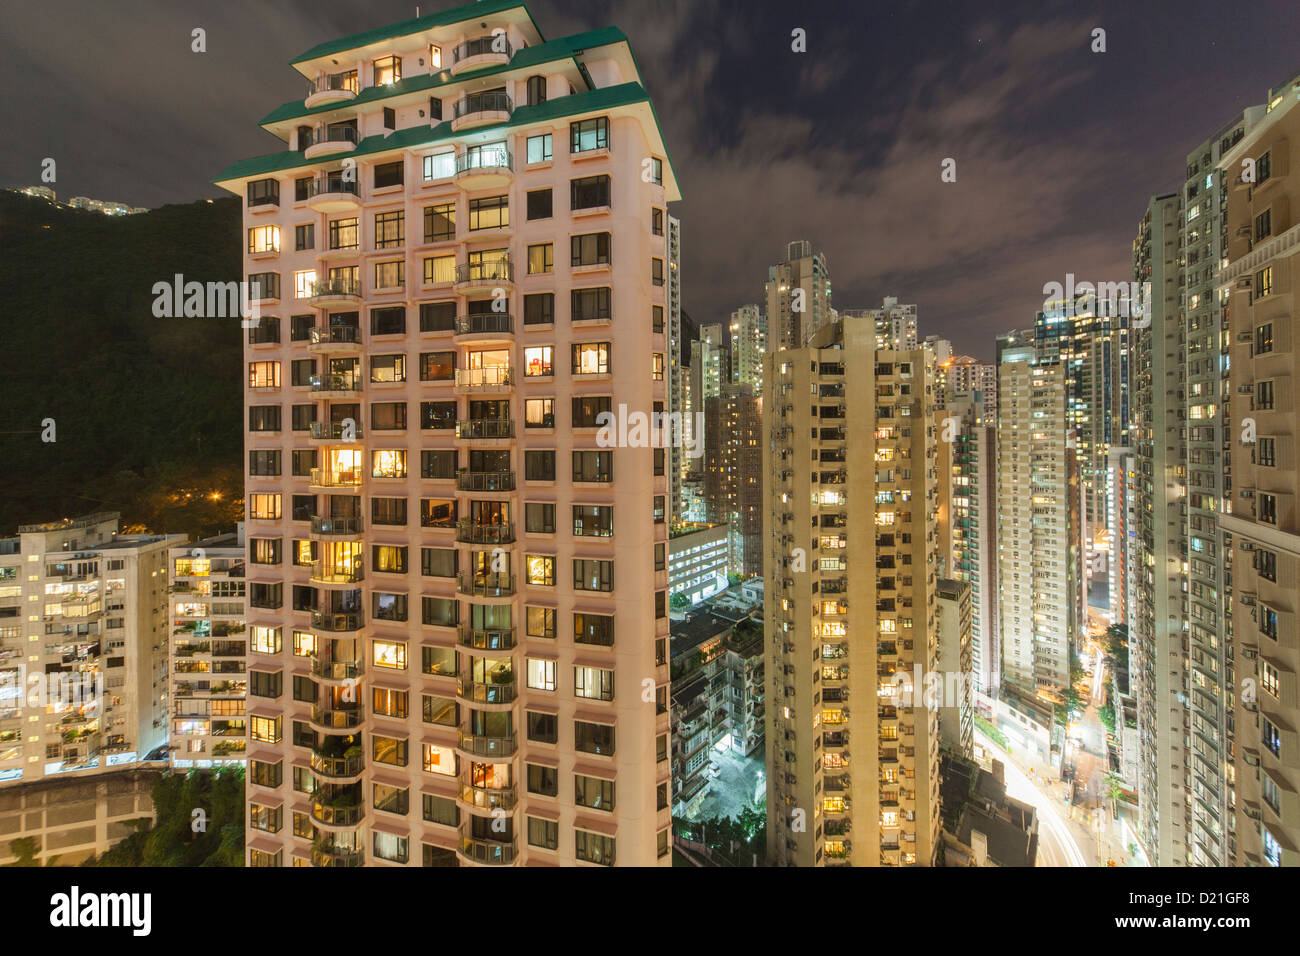 Bâtiments à plusieurs étages dans l'île de Hong Kong Midlevels de nuit, Hong Kong, Chine, Asie Banque D'Images